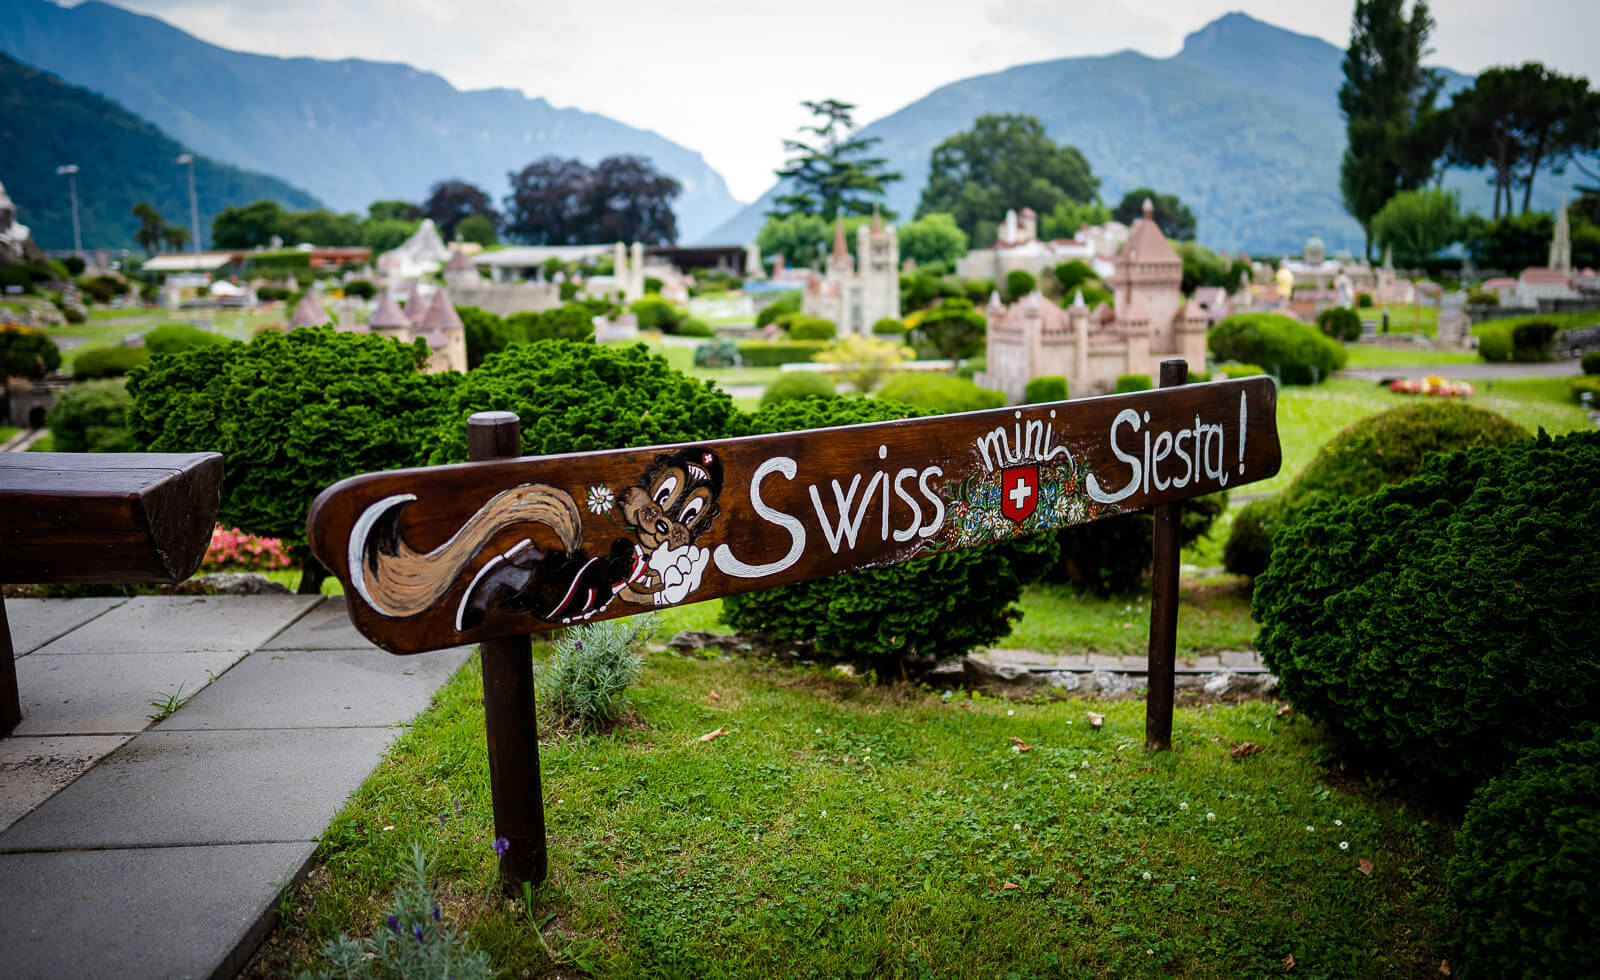 Reisetipps - Review - Urlaub in der Schweiz, in Melide, Lugano 14